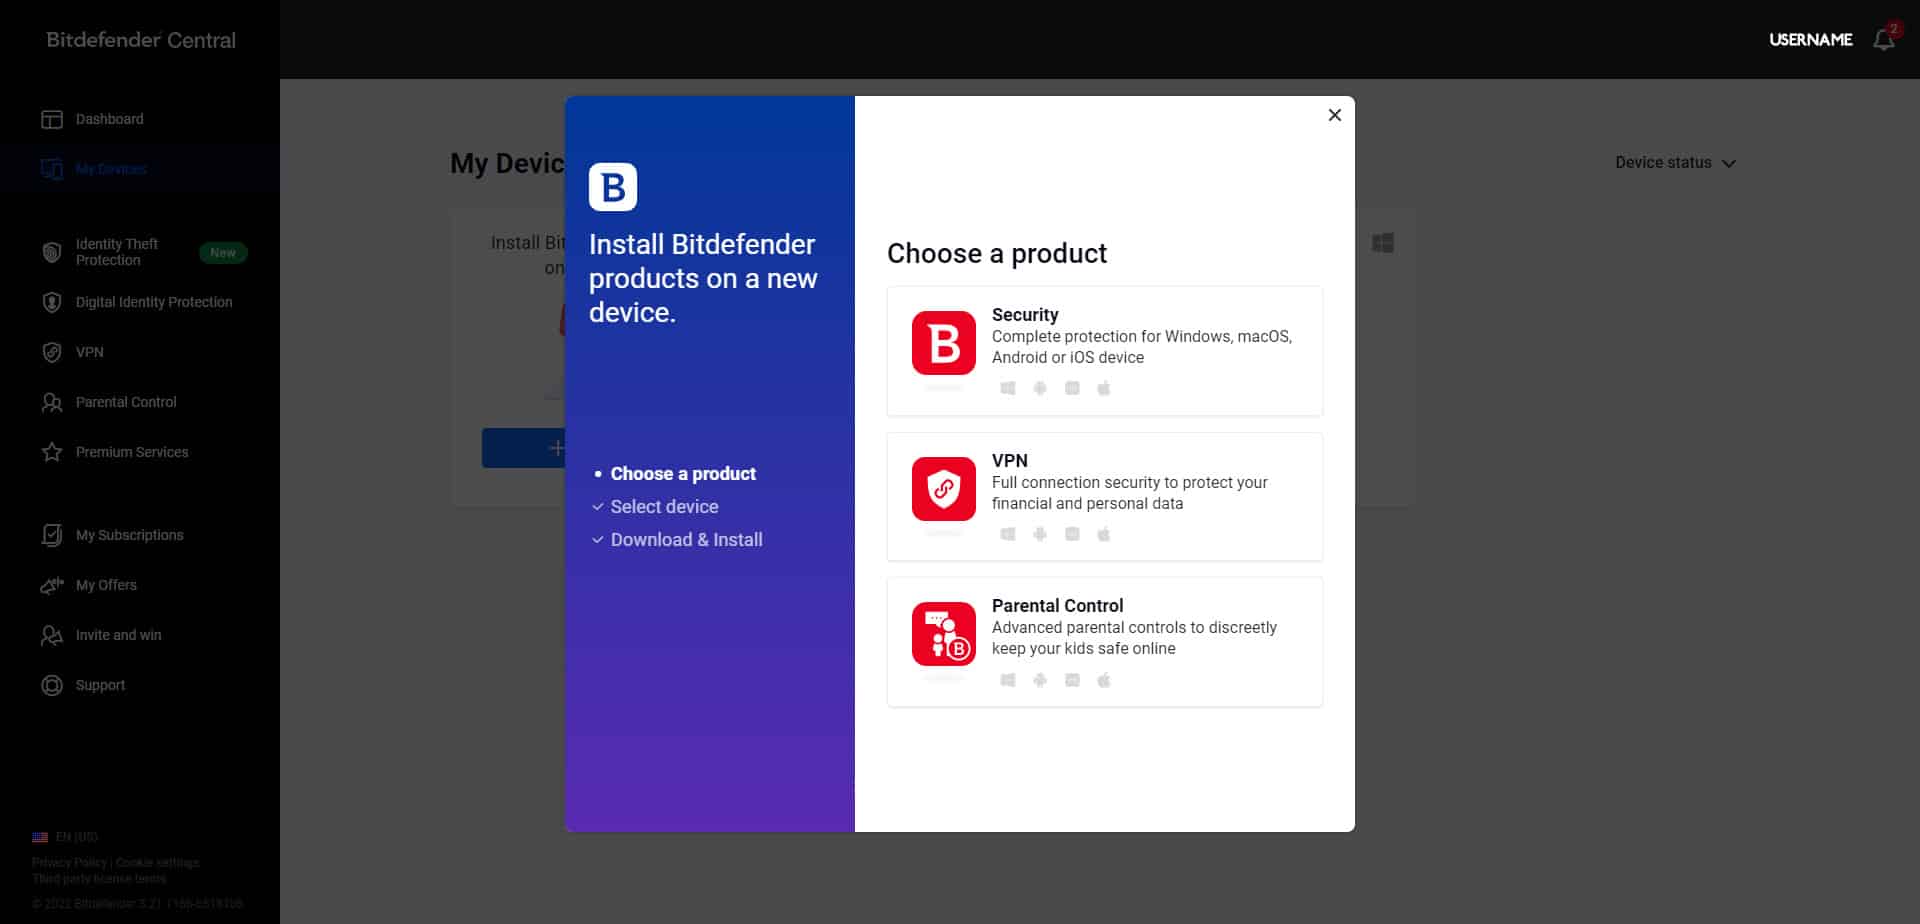 يسمح لك Bitdefender بتثبيت جميع المنتجات على الأجهزة وأنظمة التشغيل المختلفة من مكان واحد.